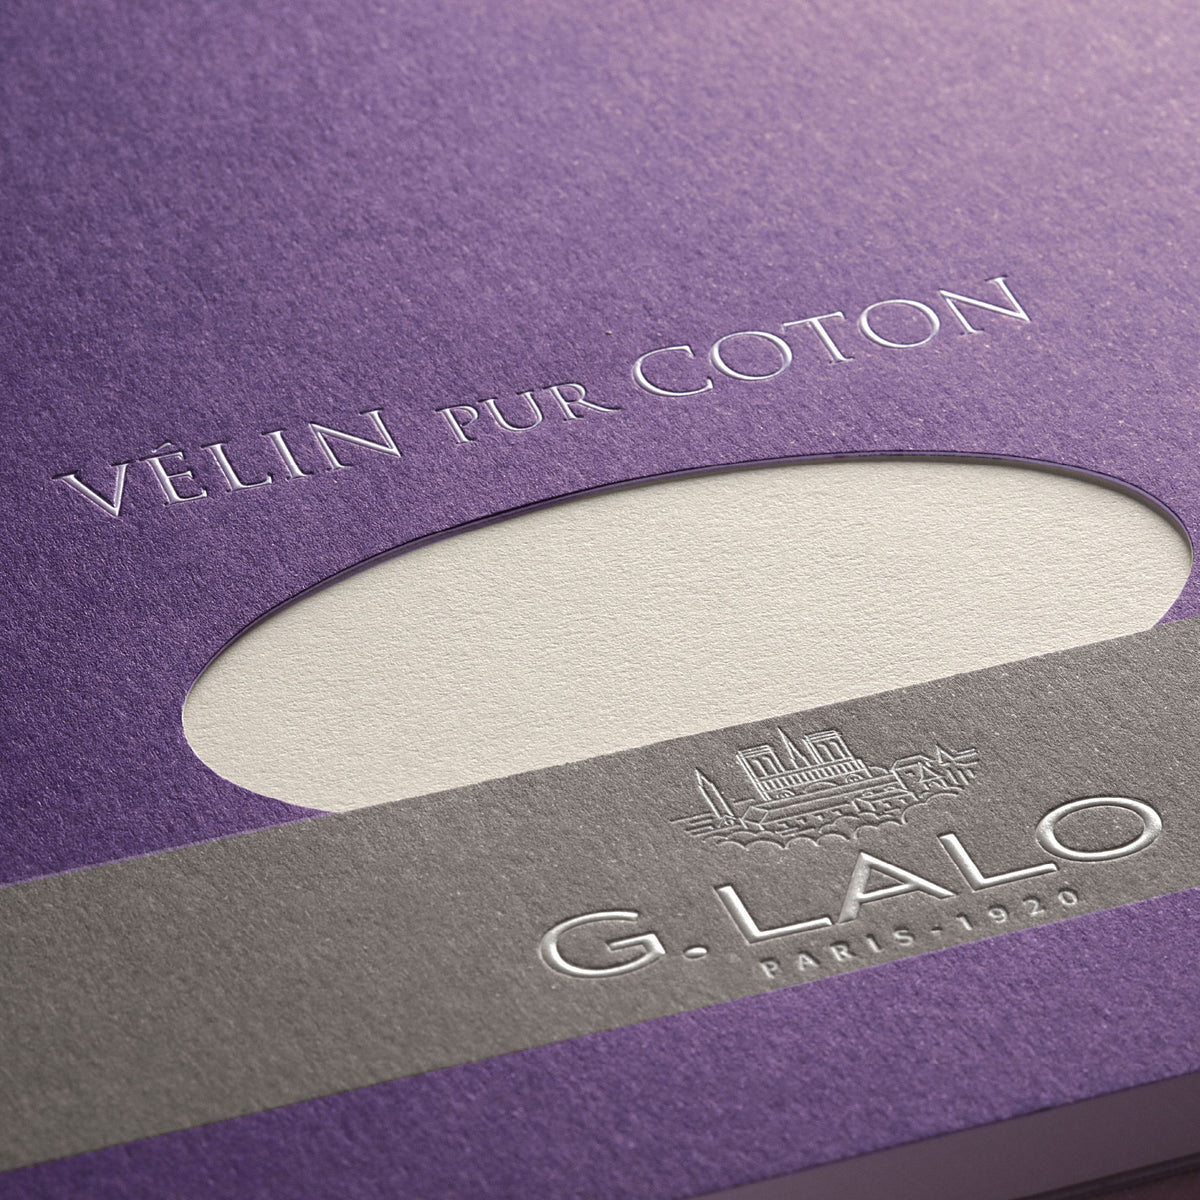 G. Lalo - Writing Pad - A5 - Cotton Cream (Vélin Pur Coton)